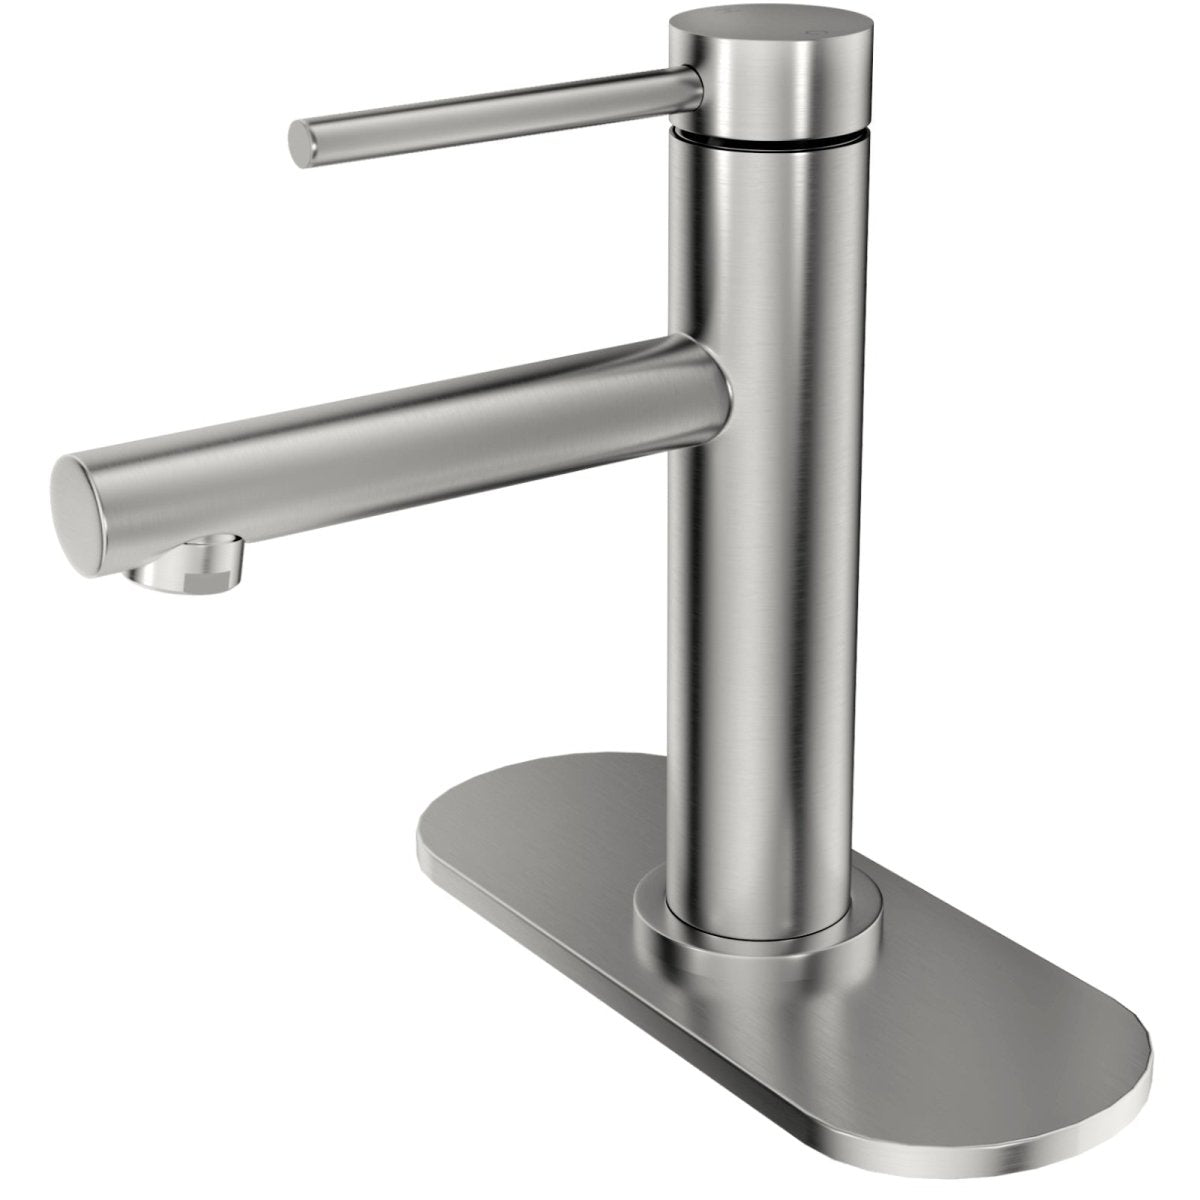 Vanity Single Handle with Supply Hose Bathroom Faucets Nickel - buyfaucet.com